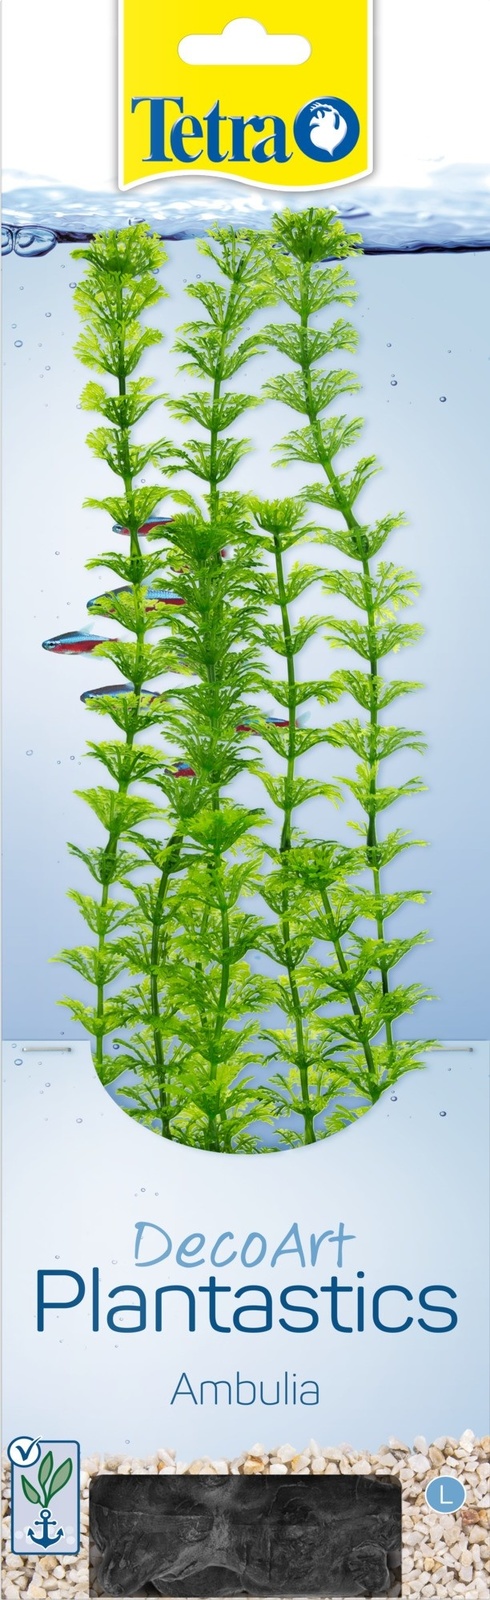 Tetra (оборудование) Tetra (оборудование) растение DecoArt Plantastics Ambulia 30 см (115 г) фотографии